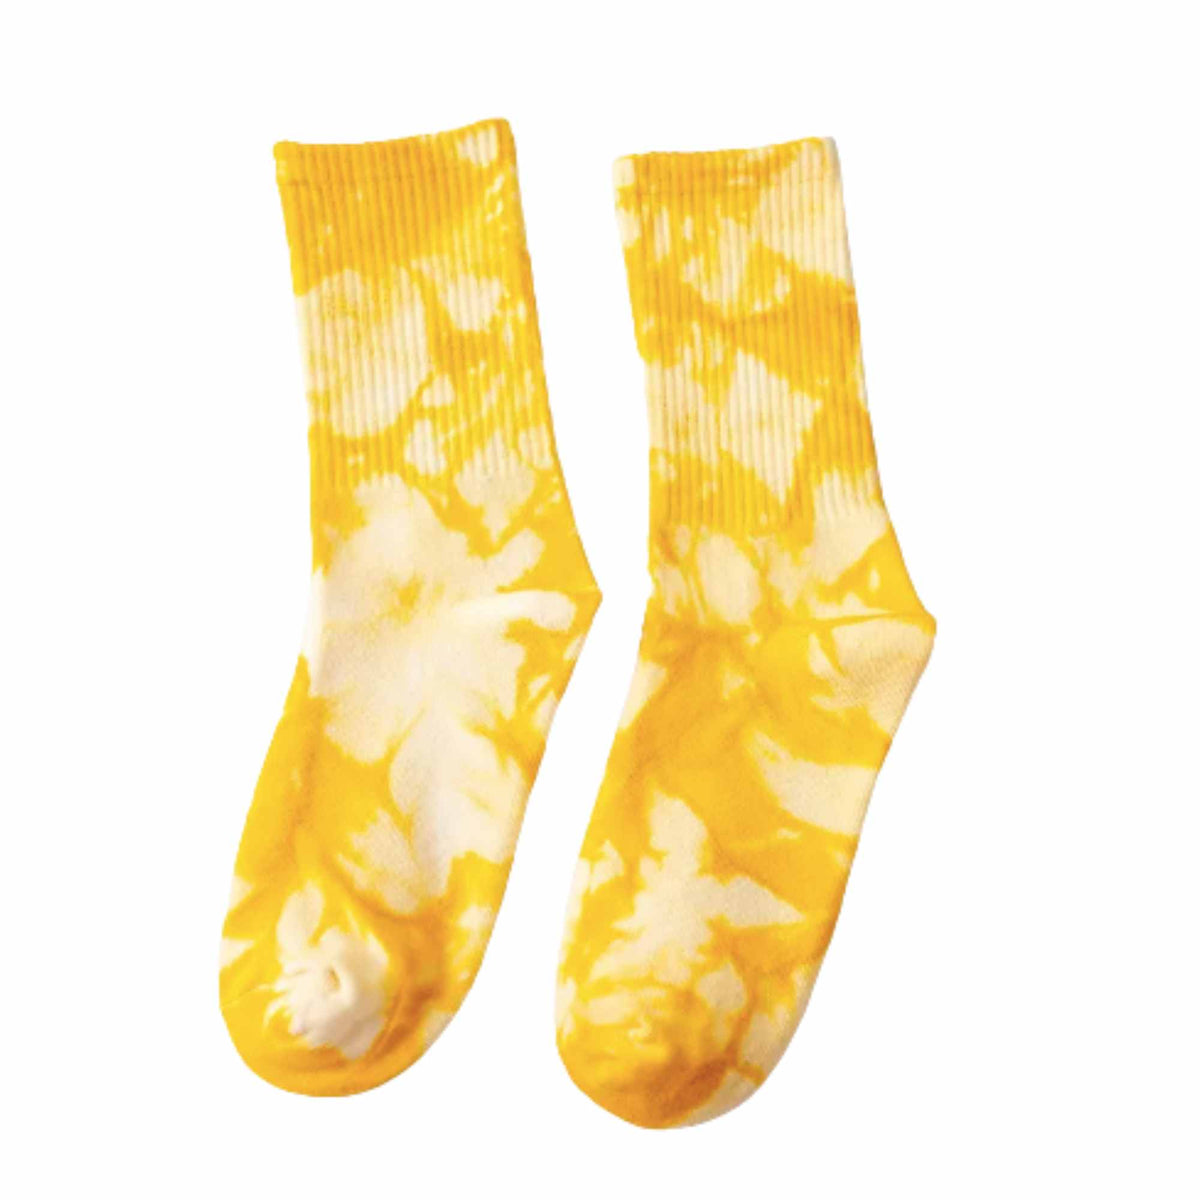 Adult &amp; Kid Tie Dye Socks - Pack of 2